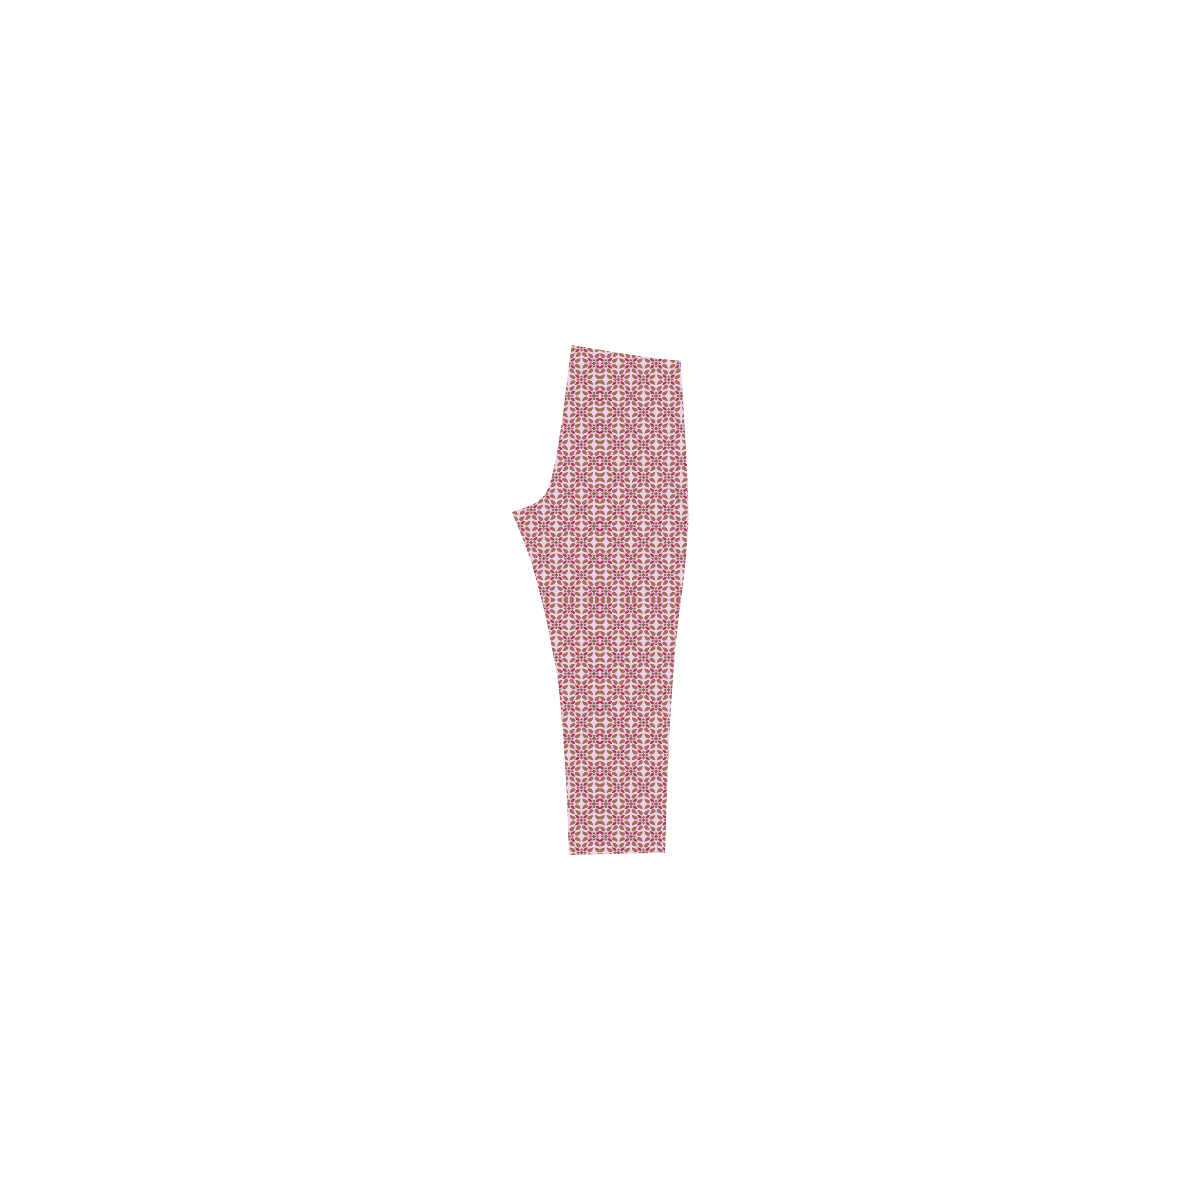 Retro Pink and Brown Pattern Capri Legging (Model L02)